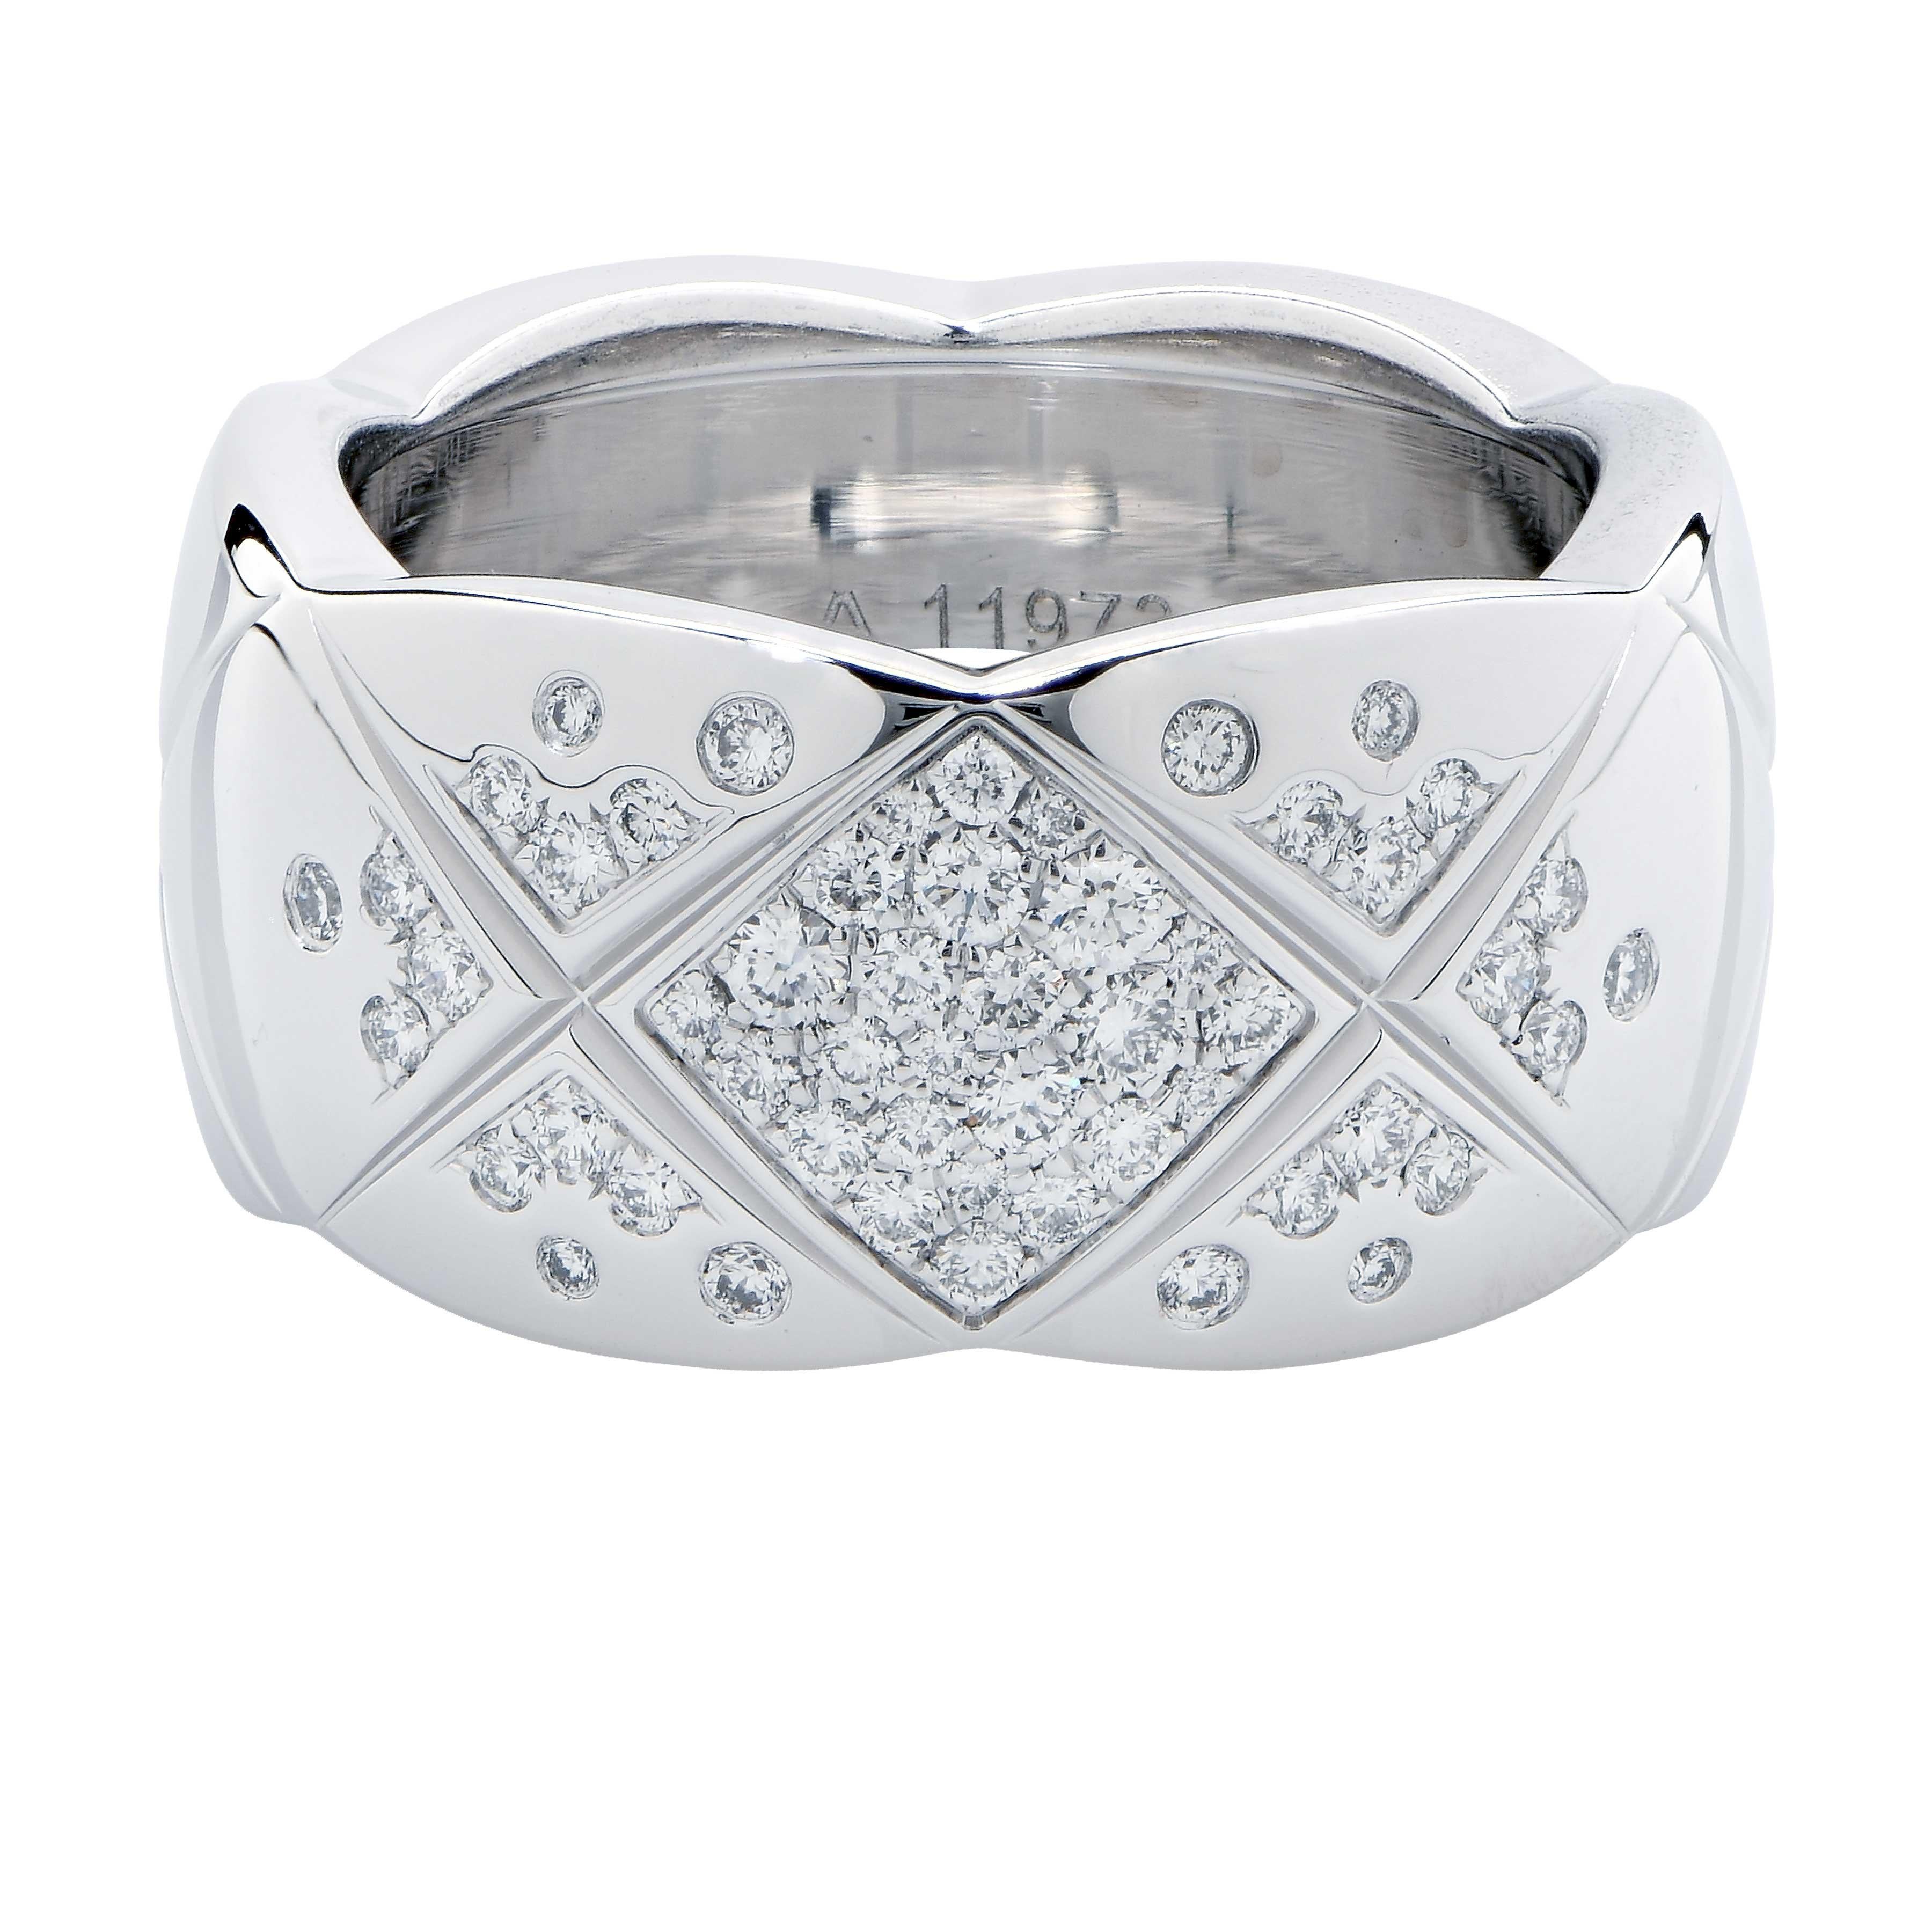 Coco Crush Diamantband von Chanel 
Gestepptes Motiv, große Ausführung, 18 Karat Weißgold, Diamanten
Ring Größe 7.5 
Metall Gewicht 18 Gramm